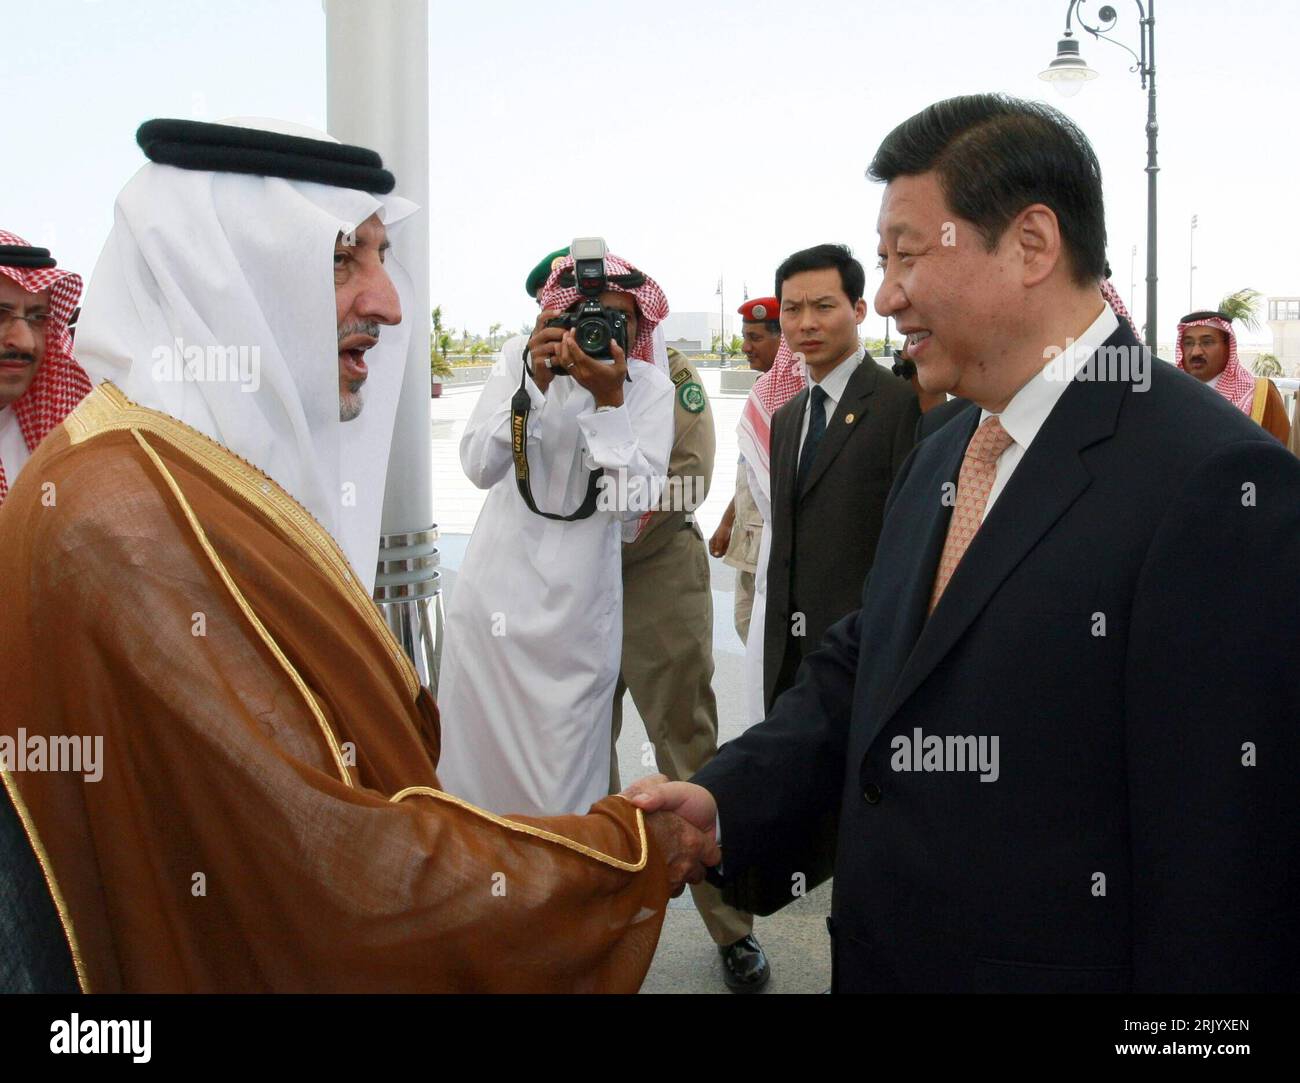 Bildnummer: 52587998 Datum: 21.06.2008 Copyright: imago/Xinhua Prinz Khalid al-Faisal bin Abdul Aziz al-Saud (li., Saudi Arabien/Gouverneur der Provinz Makkah) begrüßt Vizepräsident Xi Jinping (China) anlässlich eines Treffens in Jeddah - PUBLICATIONxNOTxINxCHN ,; 2008, Jeddah, Politik, Personen, Shakehands, Händeschütteln, Premiumd; , quer, Kbdig, Gruppenbild, Close, Randbild, People Bildnummer 52587998 Datum 21 06 2008 Copyright Imago XINHUA Prinz Khalid Al Faisal am Abdul Aziz Al Saud verließ Saudi-Arabien Gouverneur die Provinz Makkah begrüßte Vizepräsidenten Xi Jinping rechts China während eines A Stockfoto